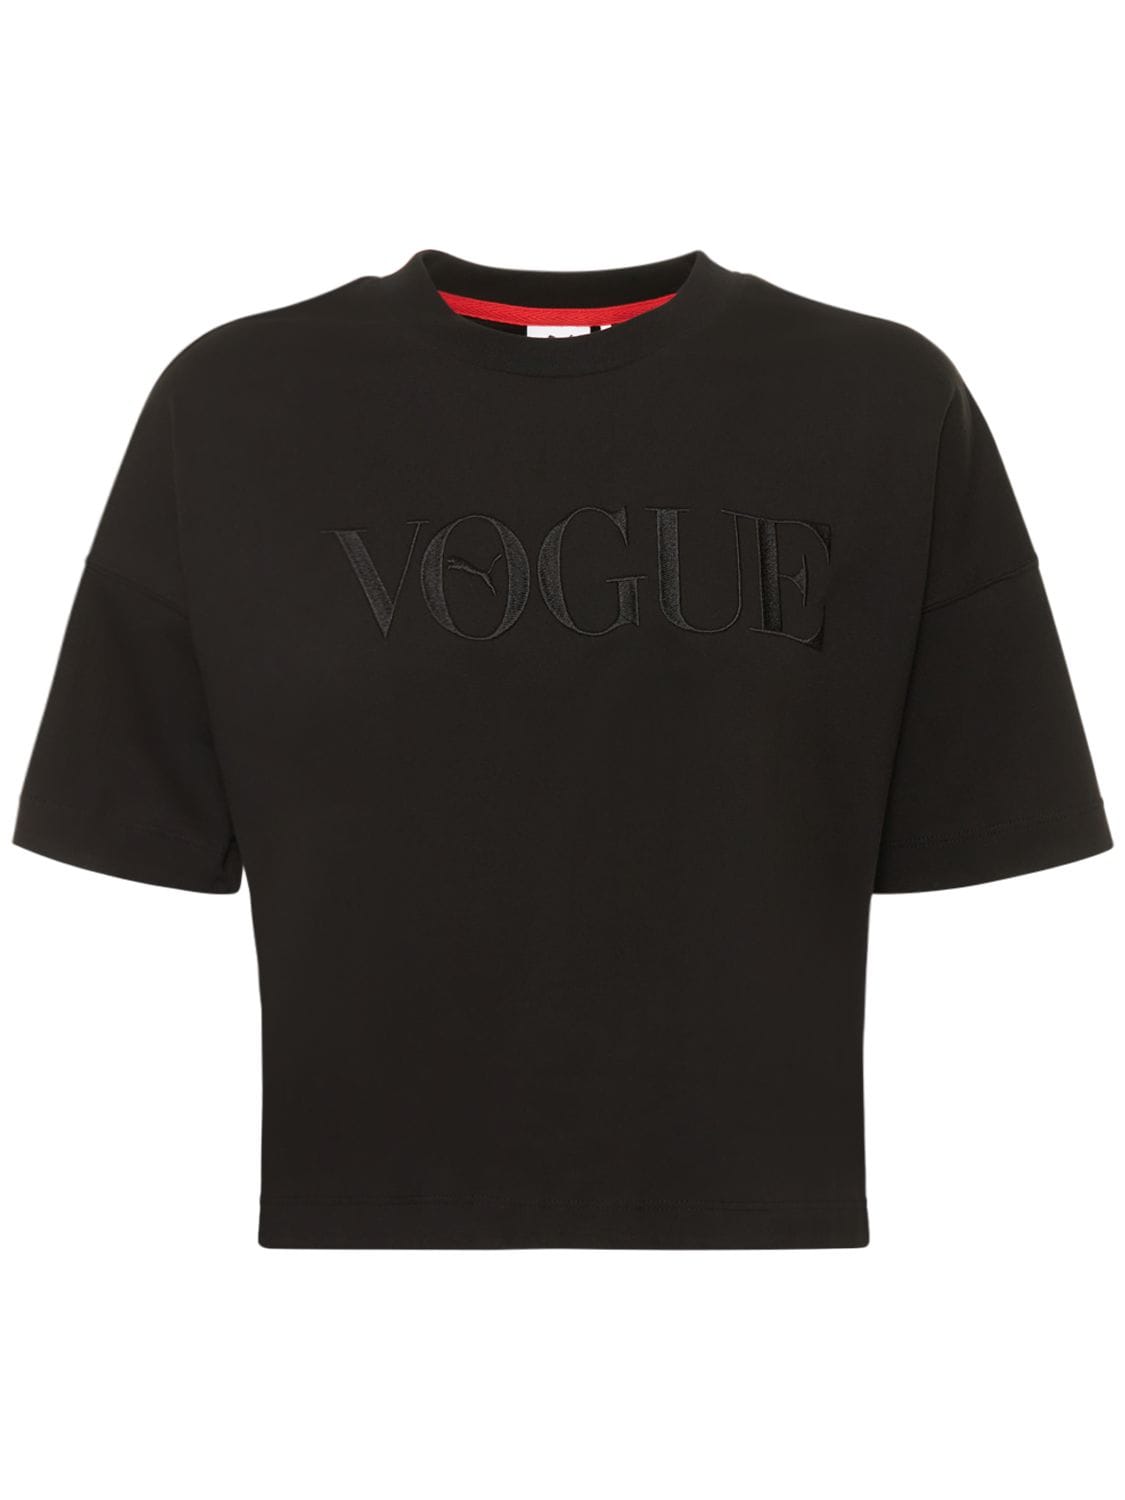 T-shirt Imprimé Puma X Vogue - PUMA - Modalova